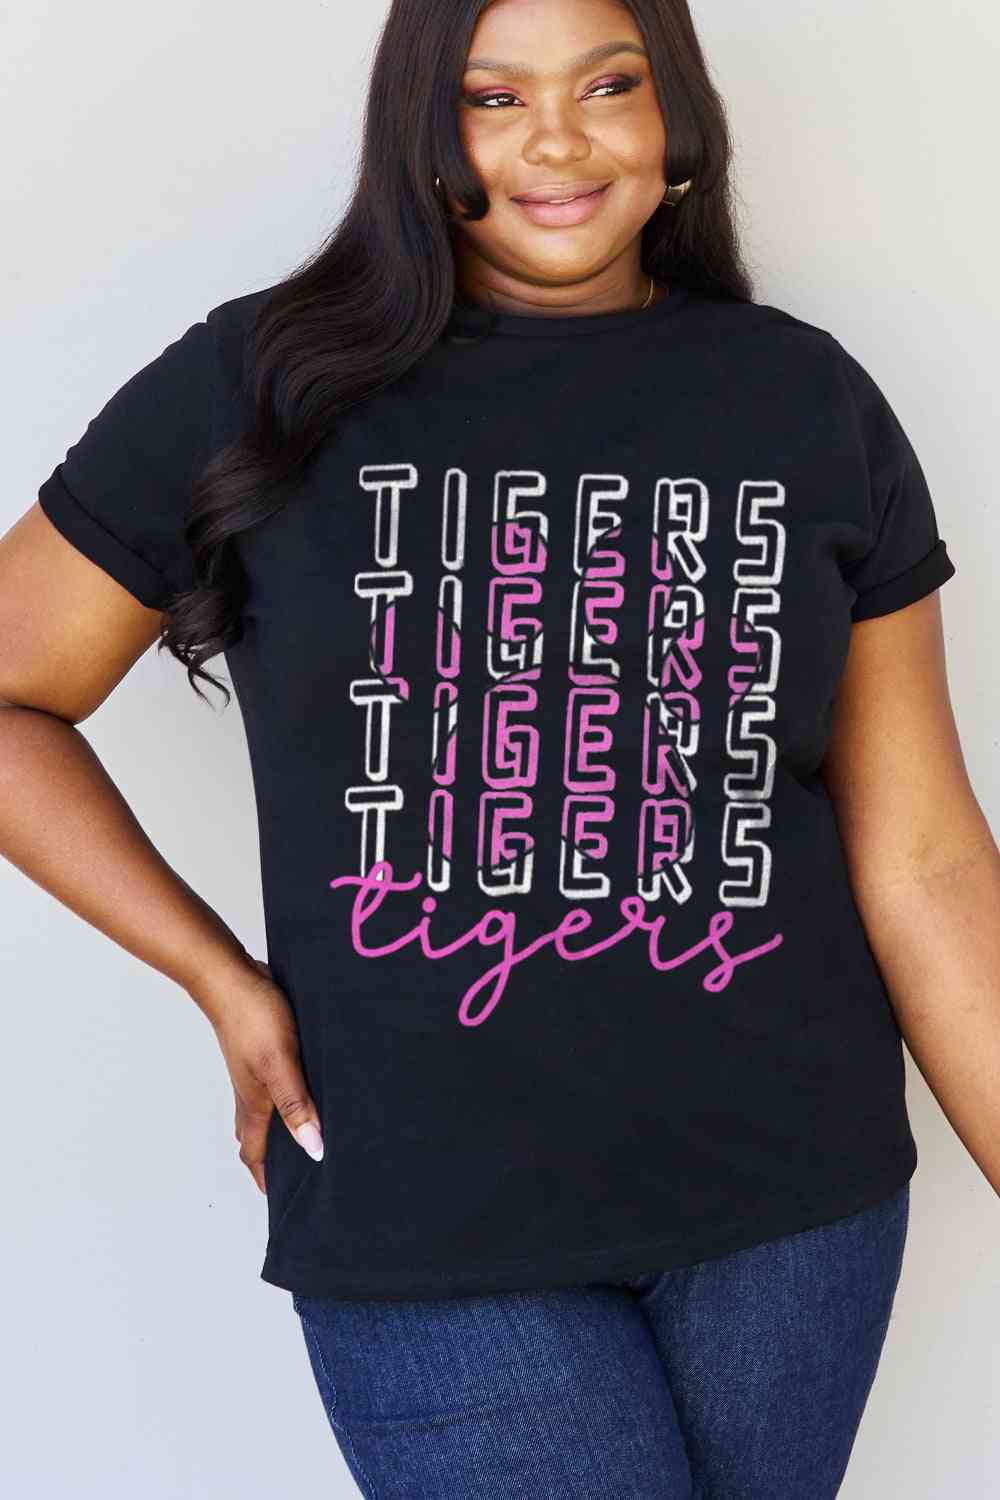 Simply Love フルサイズ TIGERS グラフィック コットン Tシャツ